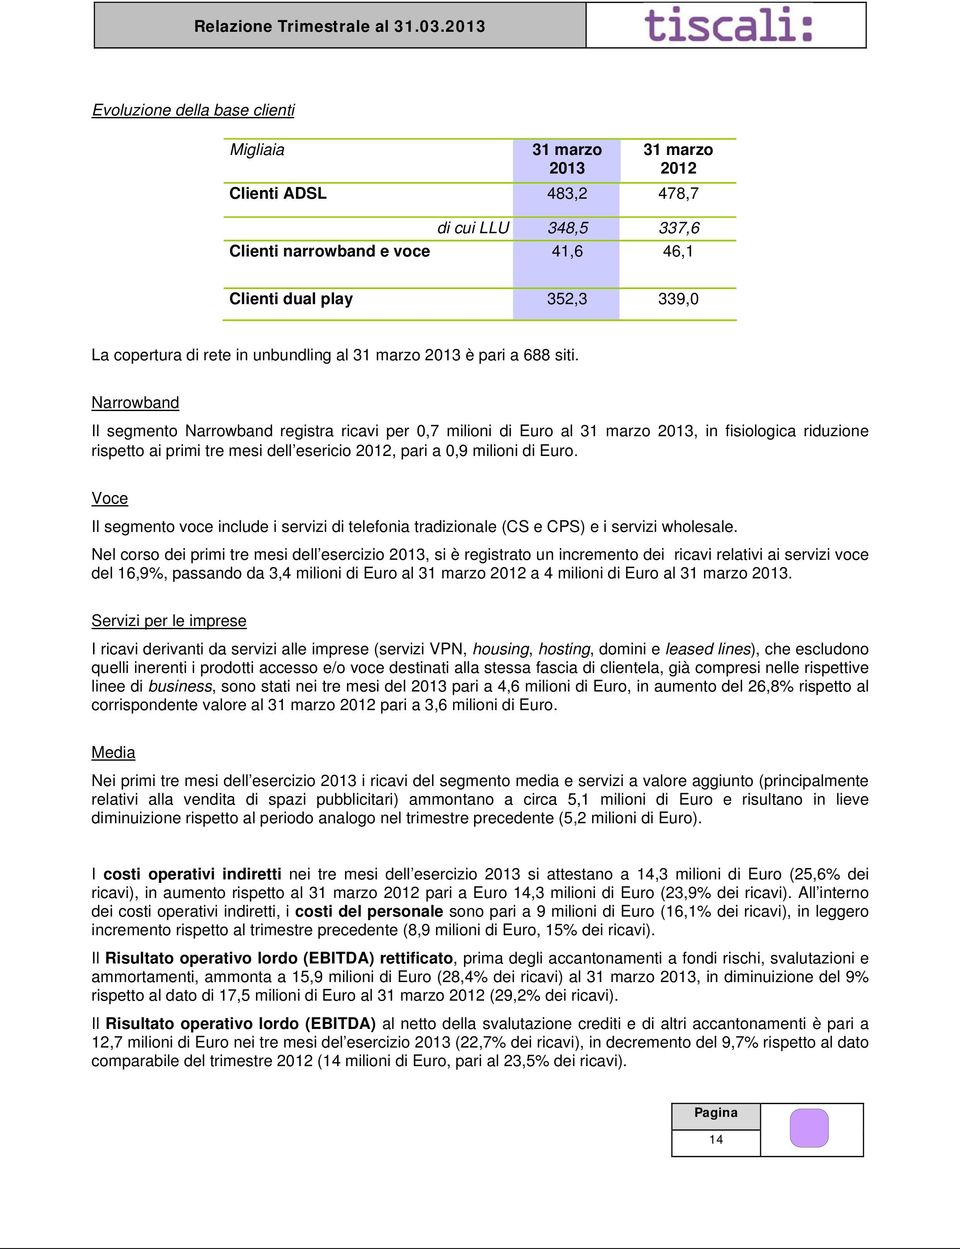 Narrowband Il segmento Narrowband registra ricavi per 0,7 milioni di Euro al 31 marzo 2013, in fisiologica riduzione rispetto ai primi tre mesi dell esericio 2012, pari a 0,9 milioni di Euro.